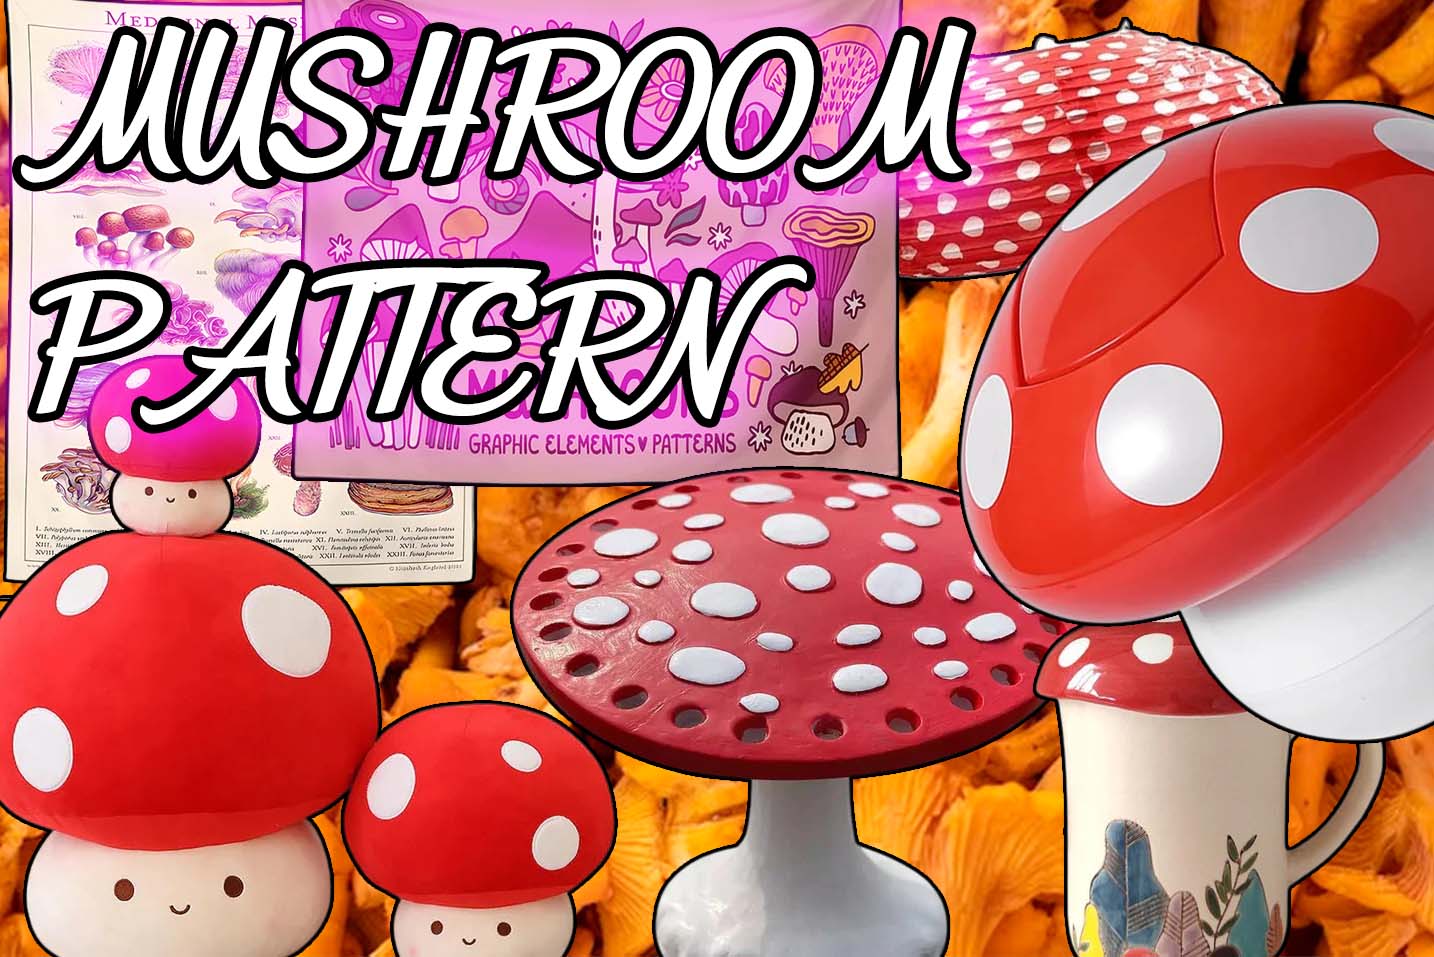 Mushroom Inspired Room Decor